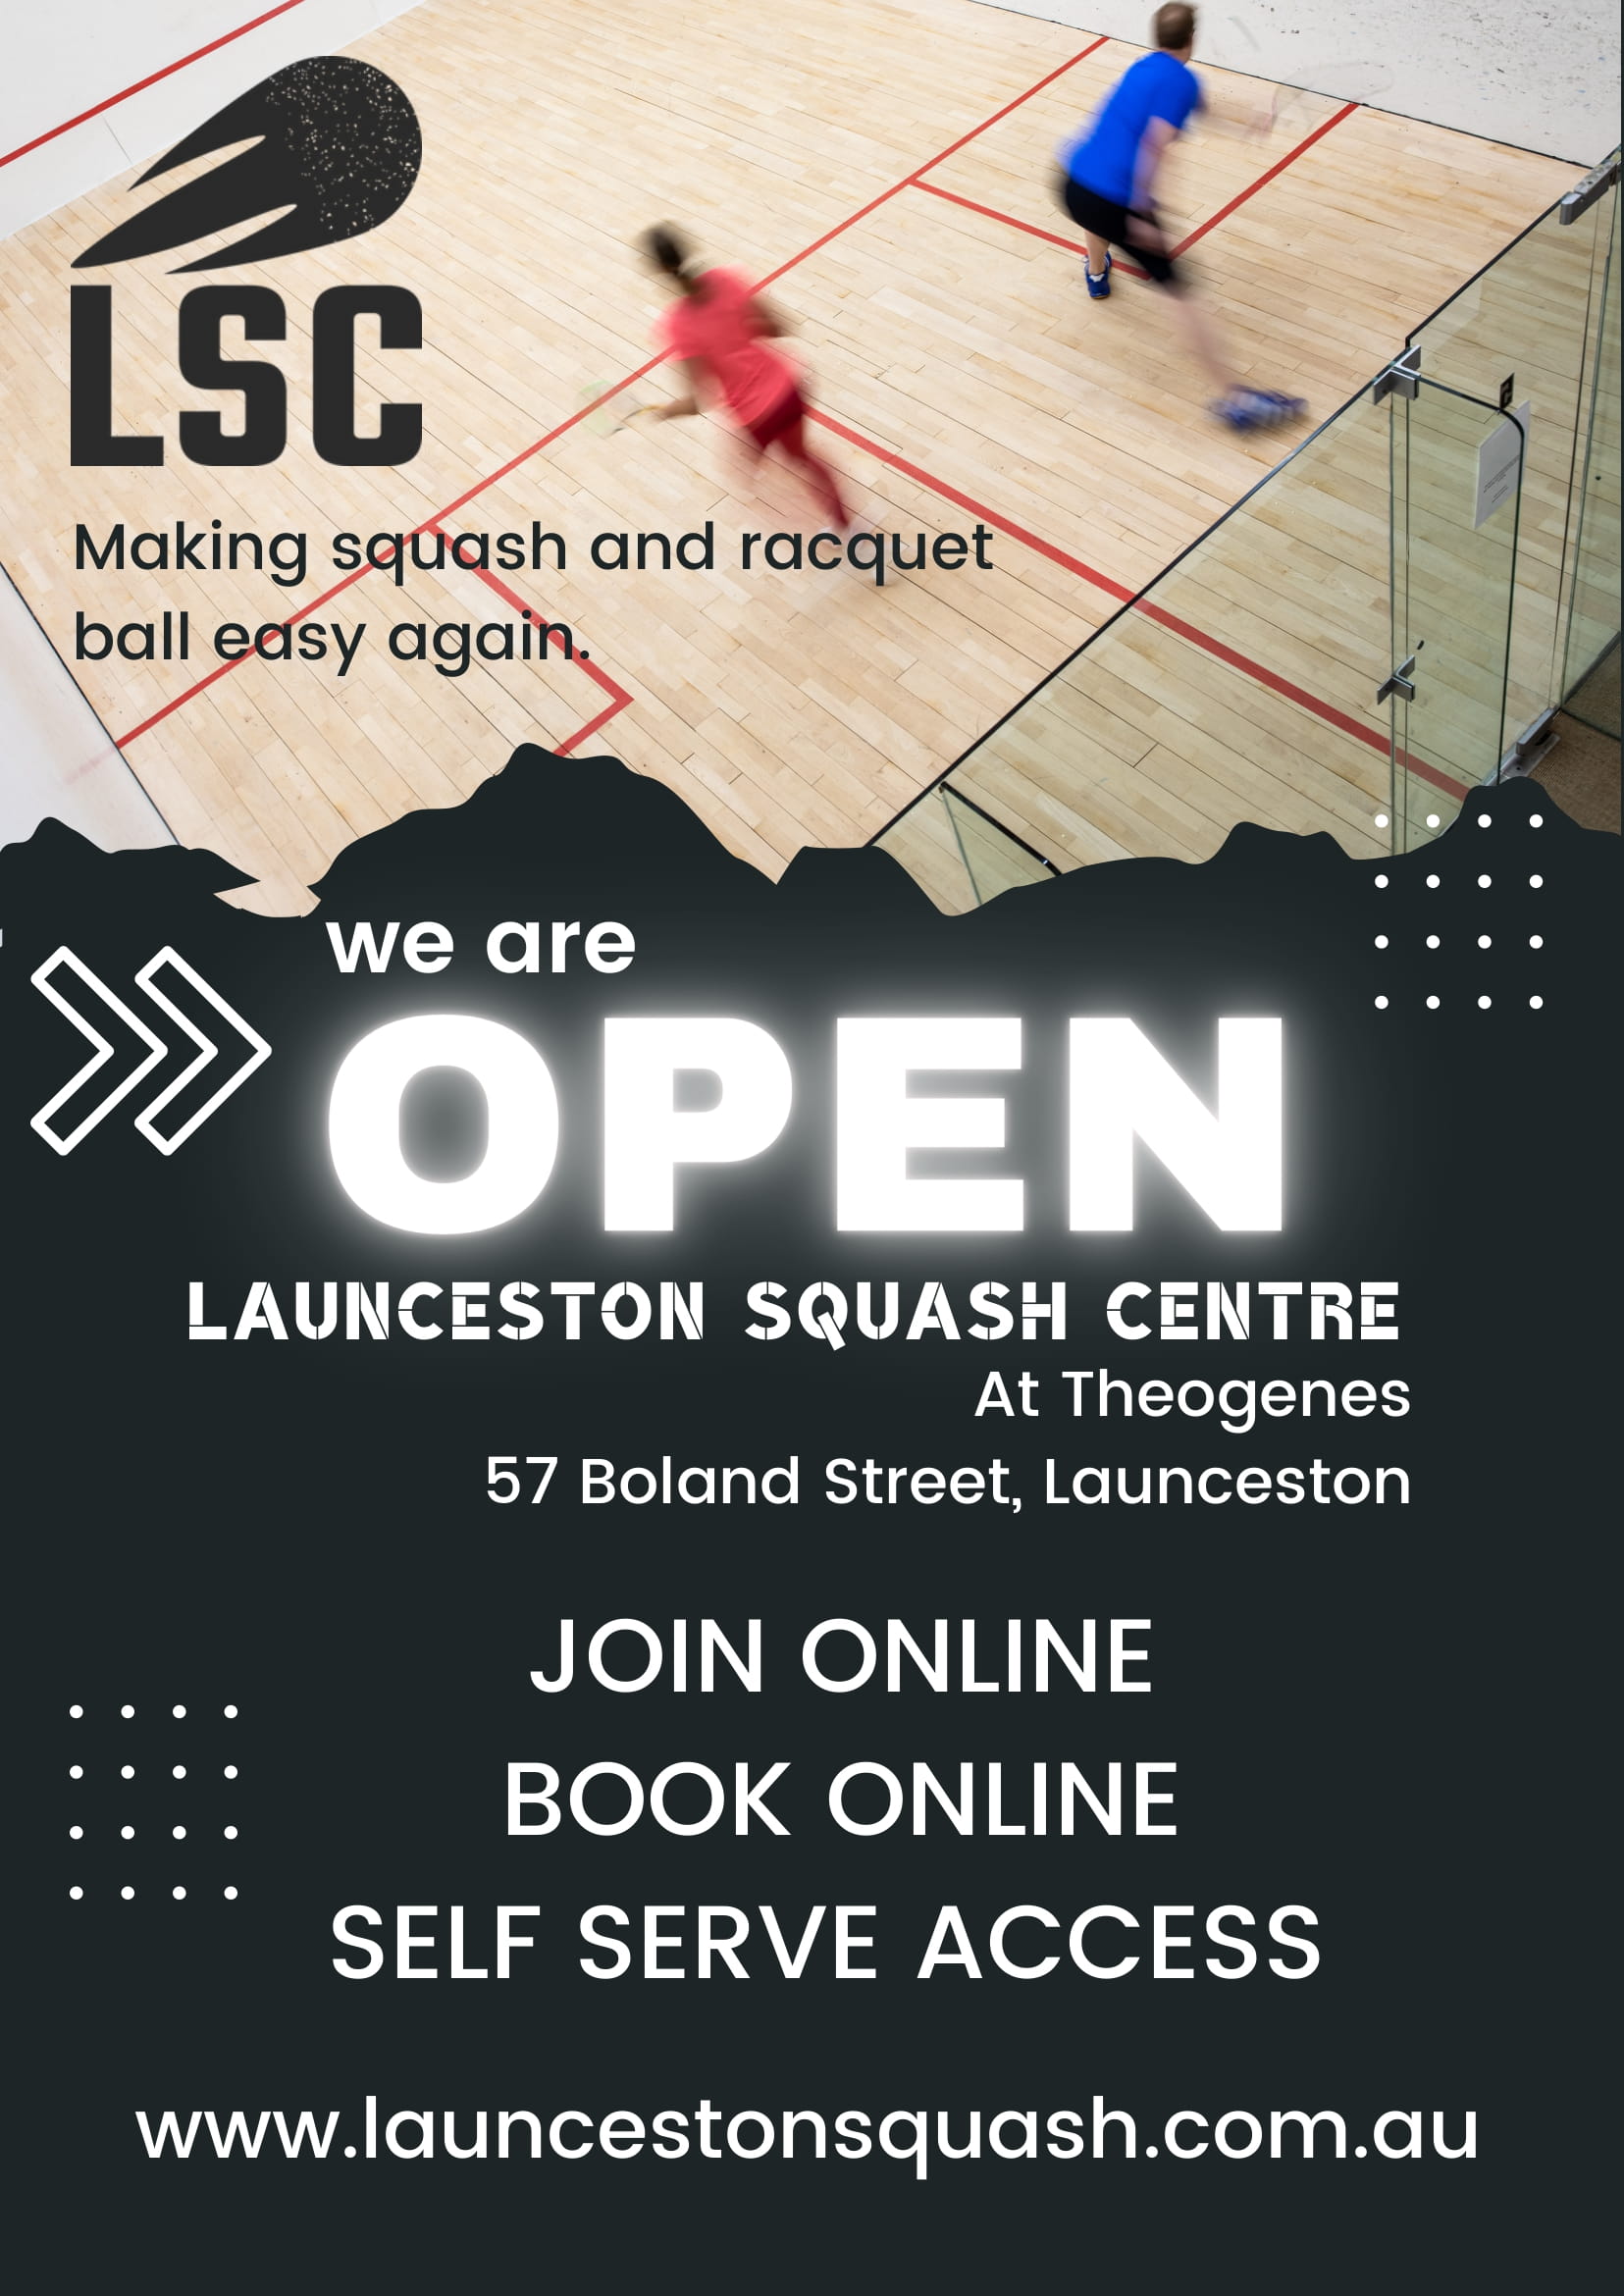 Launceston Squash Centre